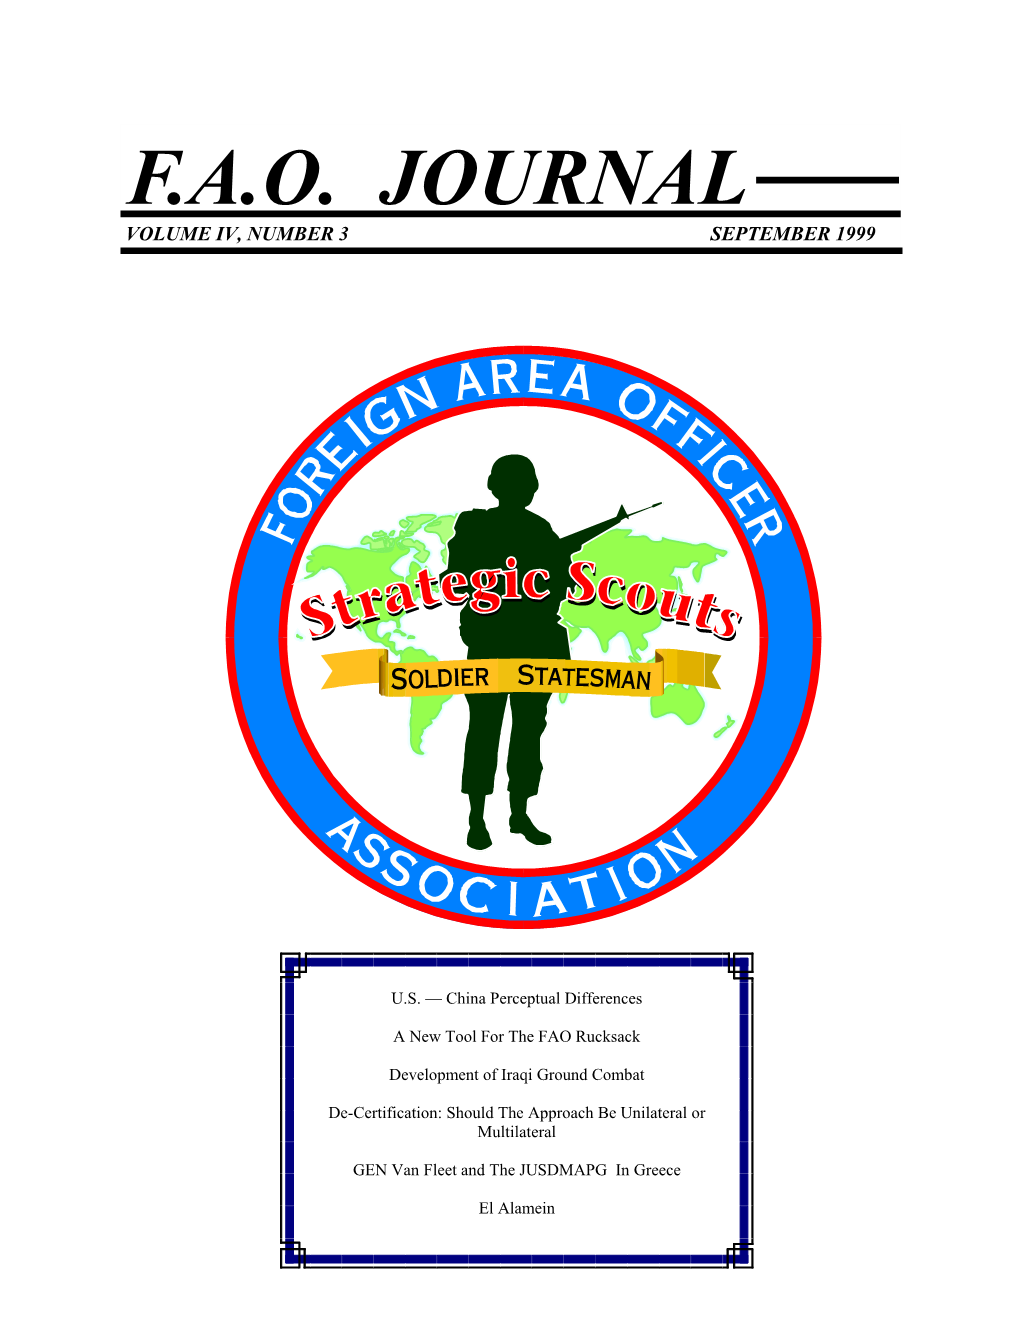 F.A.O. Journal Volume Iv, Number 3 September 1999